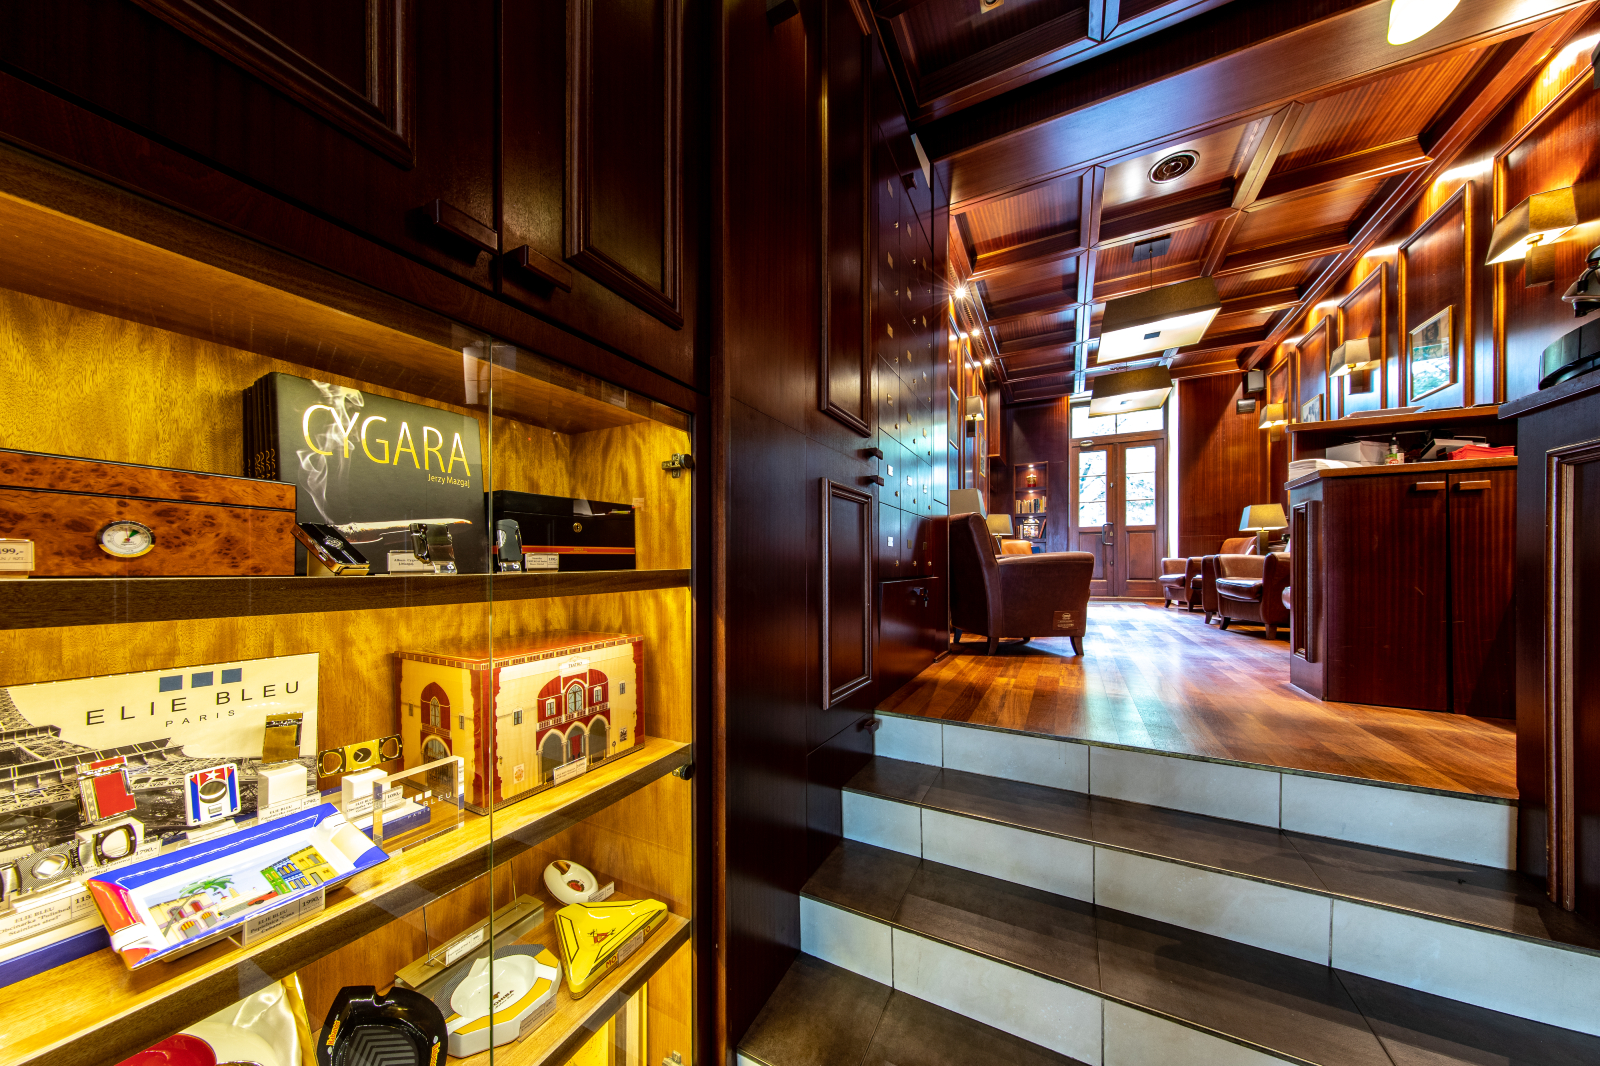 La Casa del Habano Warszawa Cigar Lounge